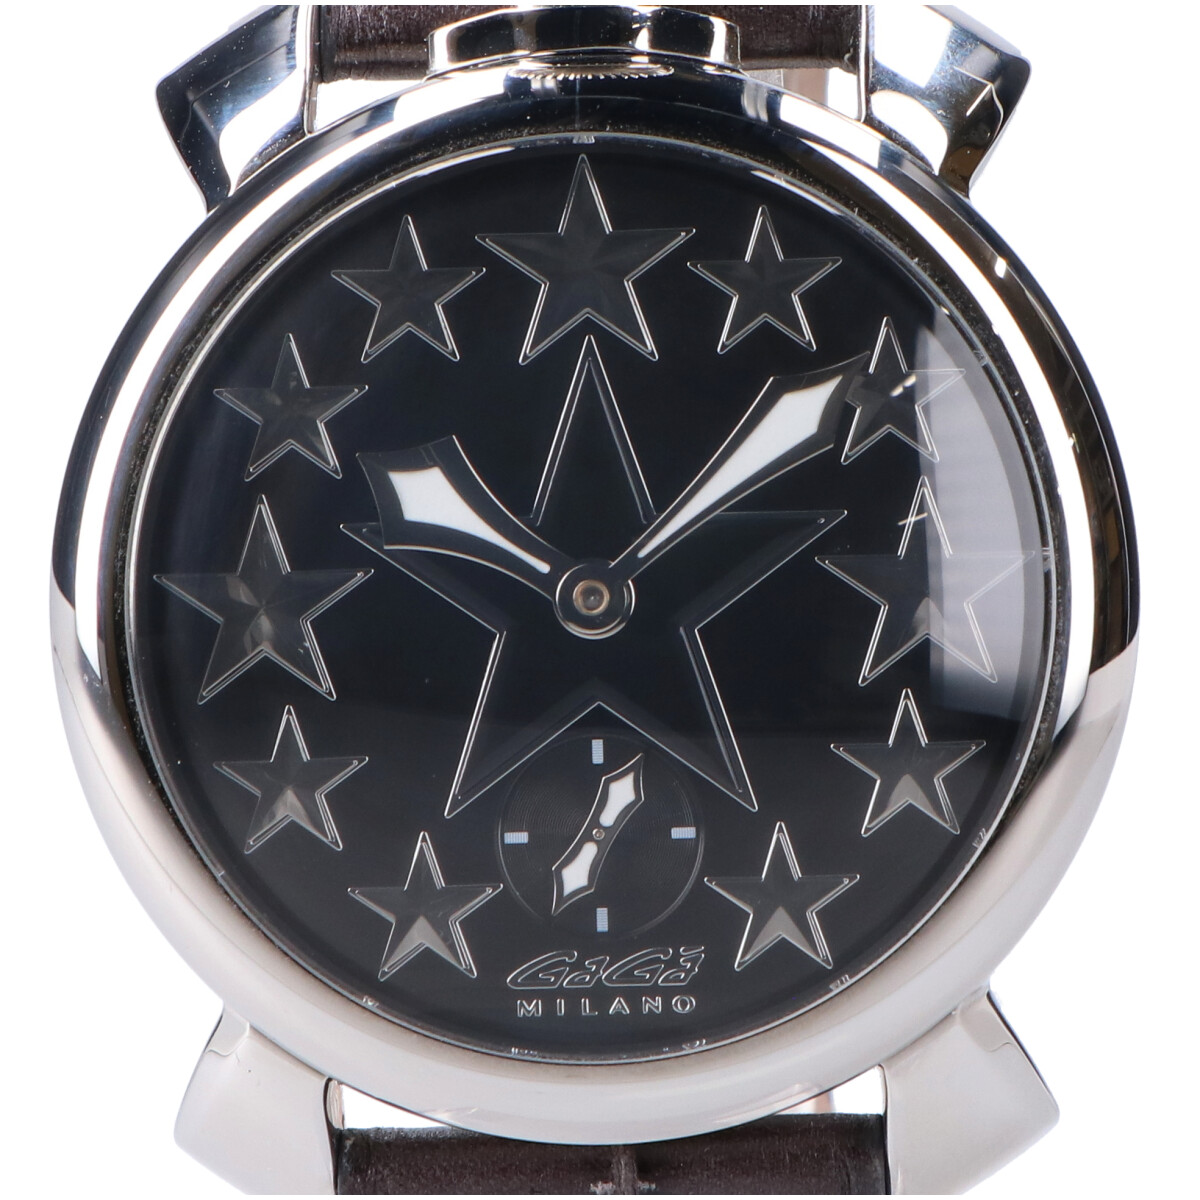 ガガミラノのブラック/シルバー 5010.STARS.01S マヌアーレ48mm スター 手巻き 腕時計の買取実績です。